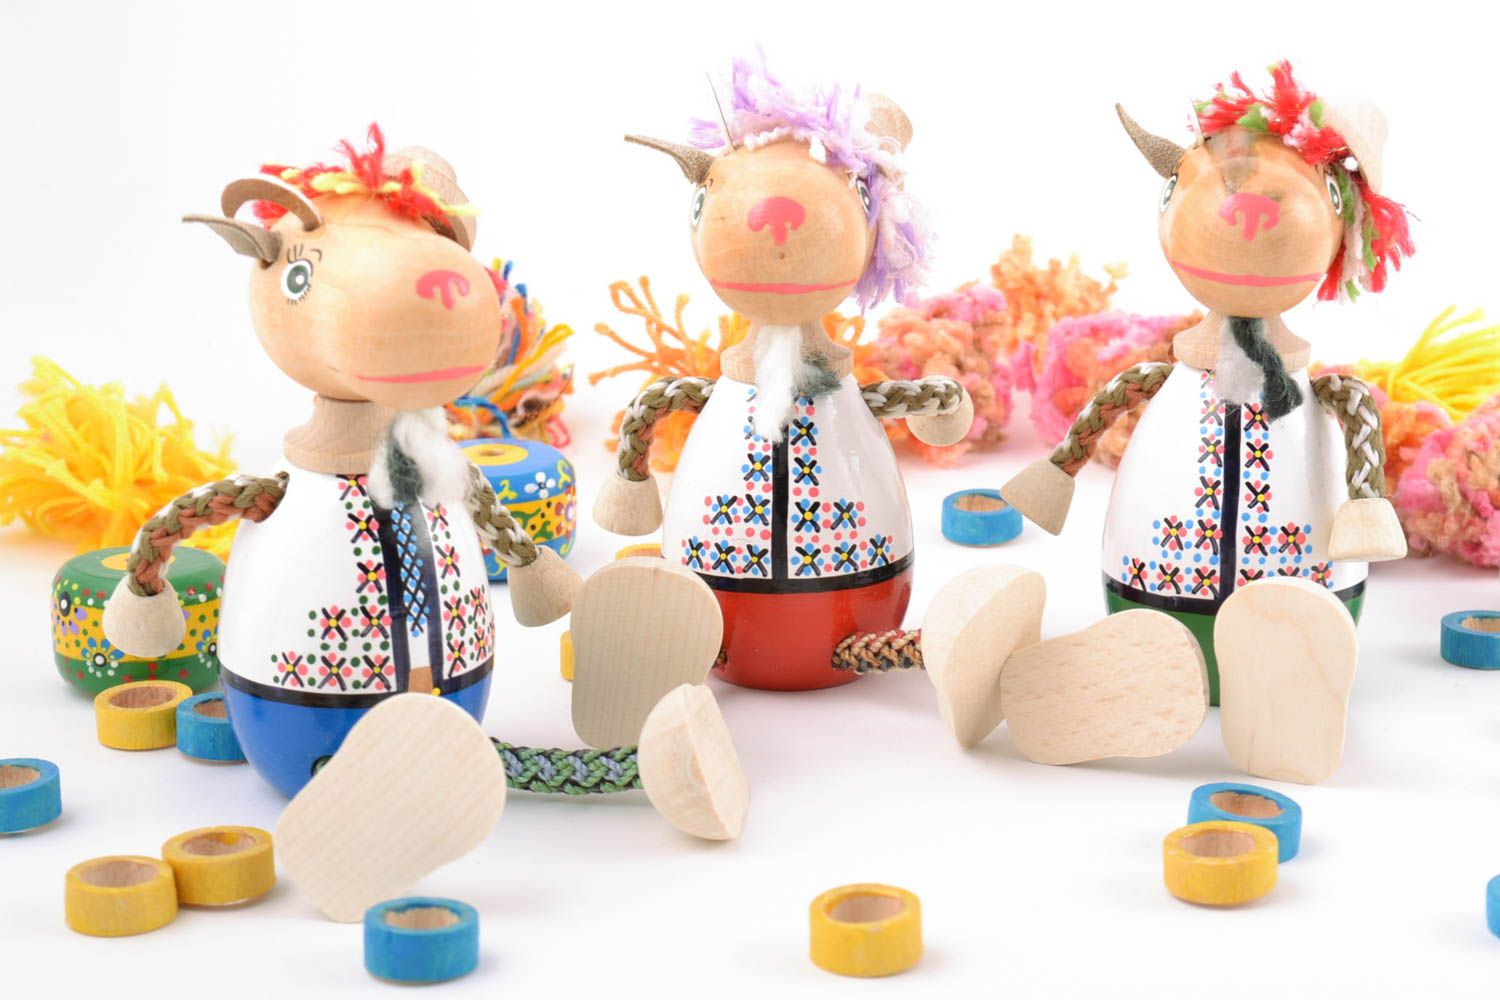 Jouets en bois faits main peints décoratifs pour enfant Chèvres 3 pièces photo 1